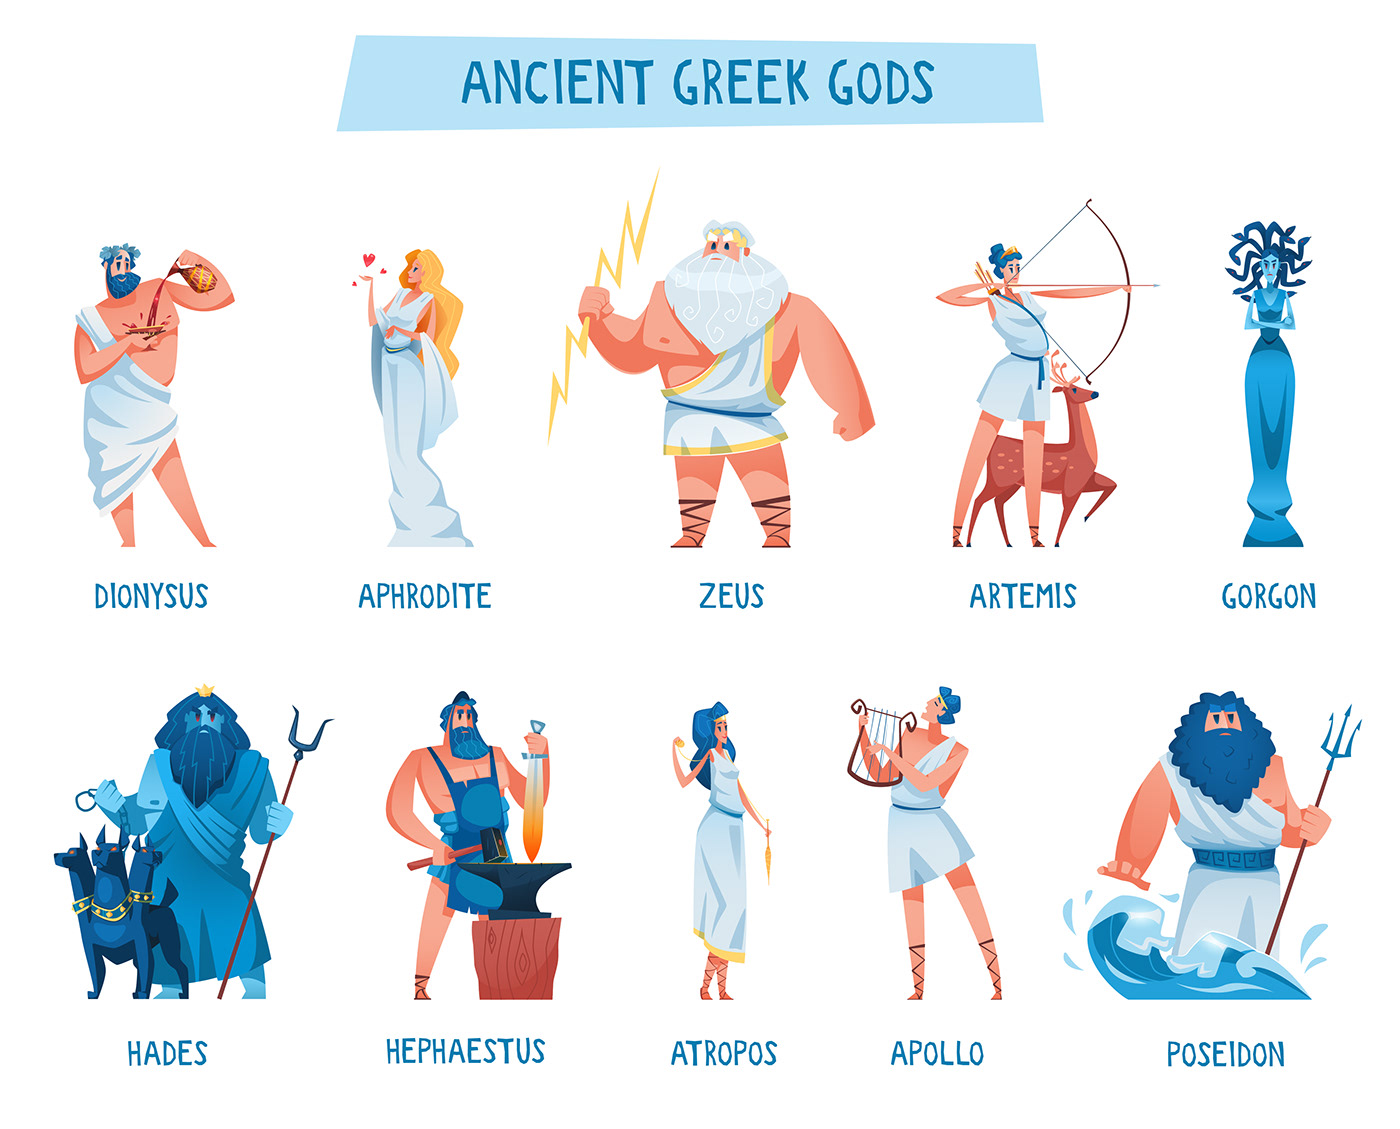 Aphrodite Apollo artemis gods greek hades Hephaestus poseidon vector zeus